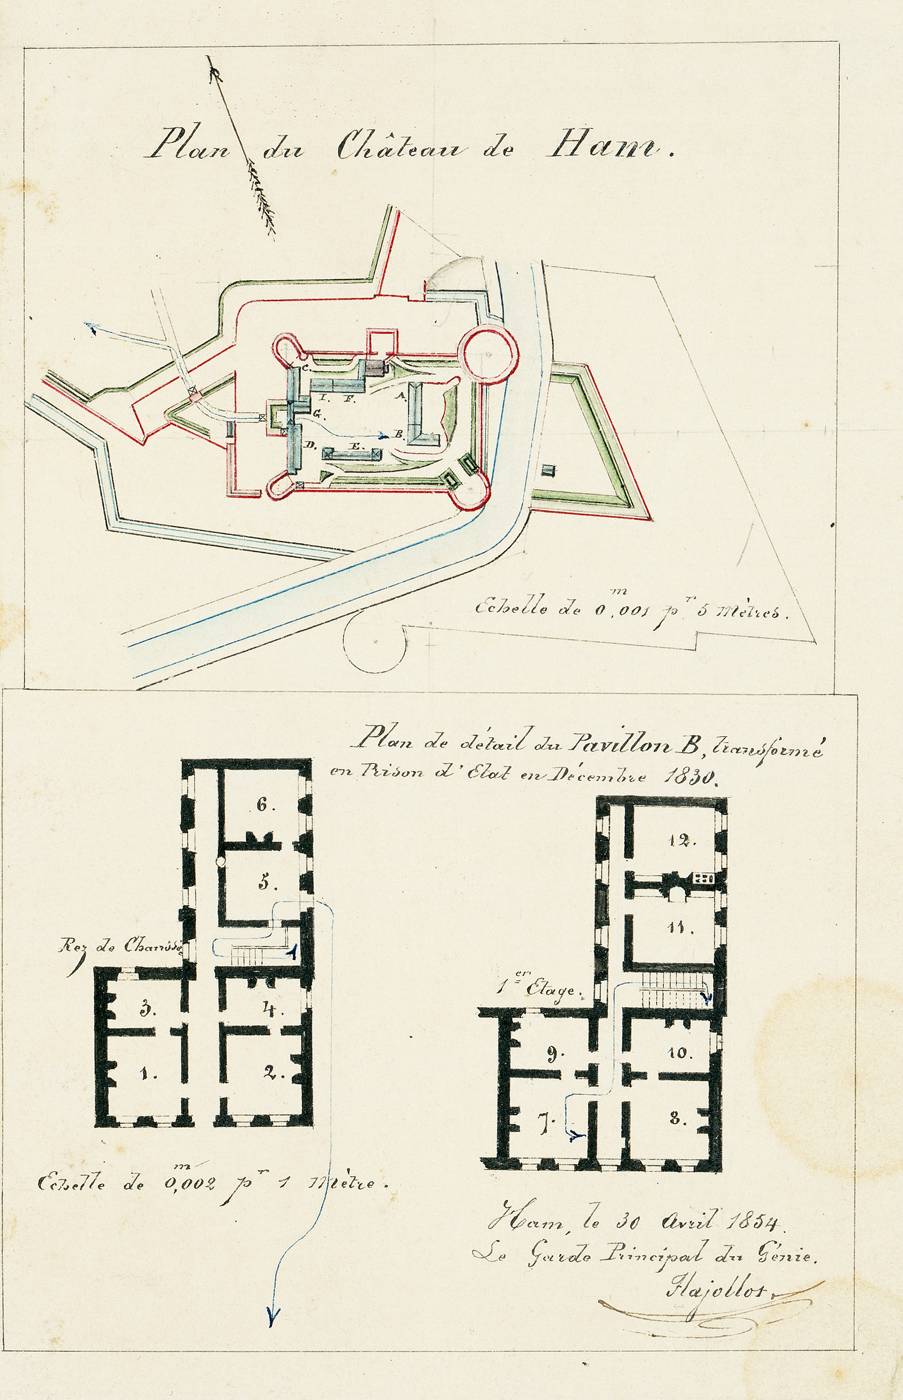 Plan du Château de Ham avec le tracé du parcours effectué par L. N. Bonaparte lors de son évasion, le 25 mai 1846.